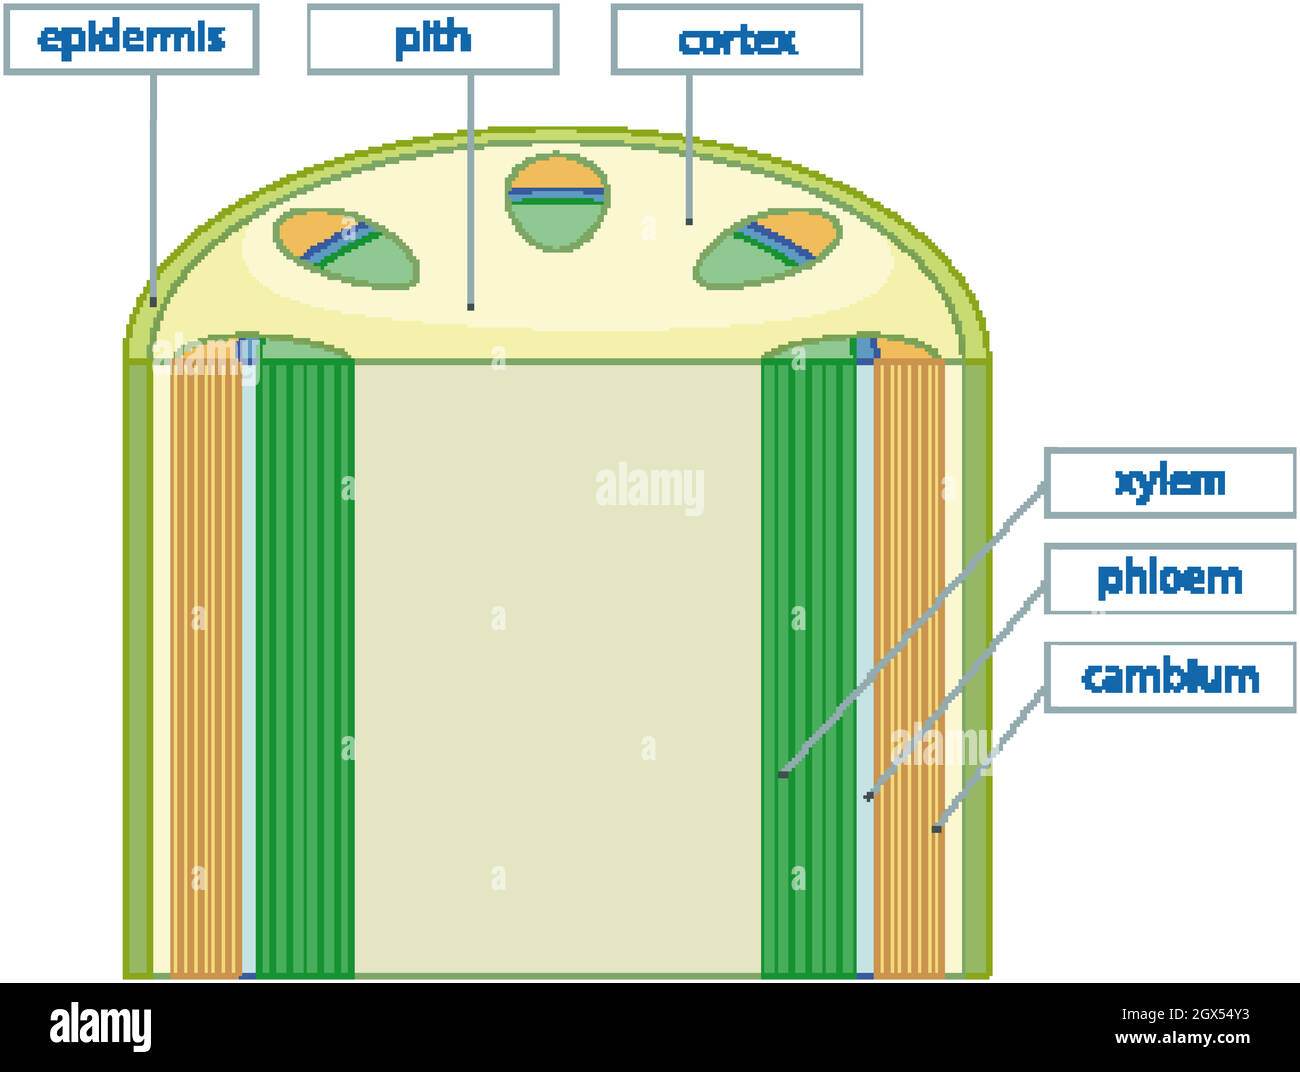 Schéma montrant le système de tissus vasculaires dans les plantes Illustration de Vecteur